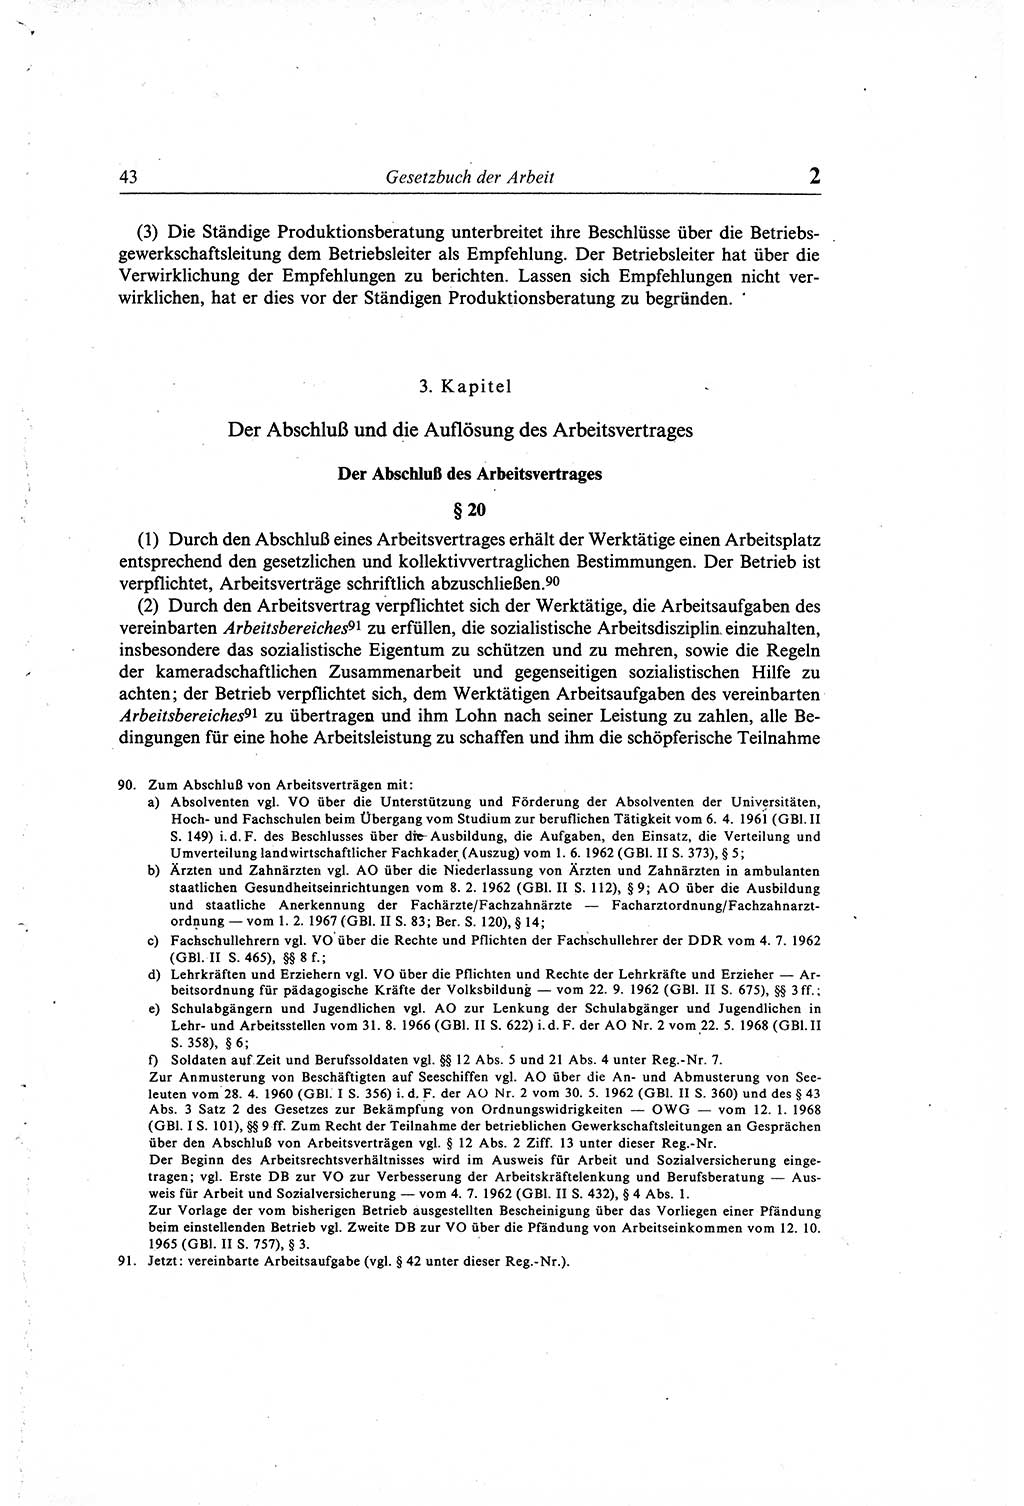 Gesetzbuch der Arbeit (GBA) und andere ausgewählte rechtliche Bestimmungen [Deutsche Demokratische Republik (DDR)] 1968, Seite 43 (GBA DDR 1968, S. 43)